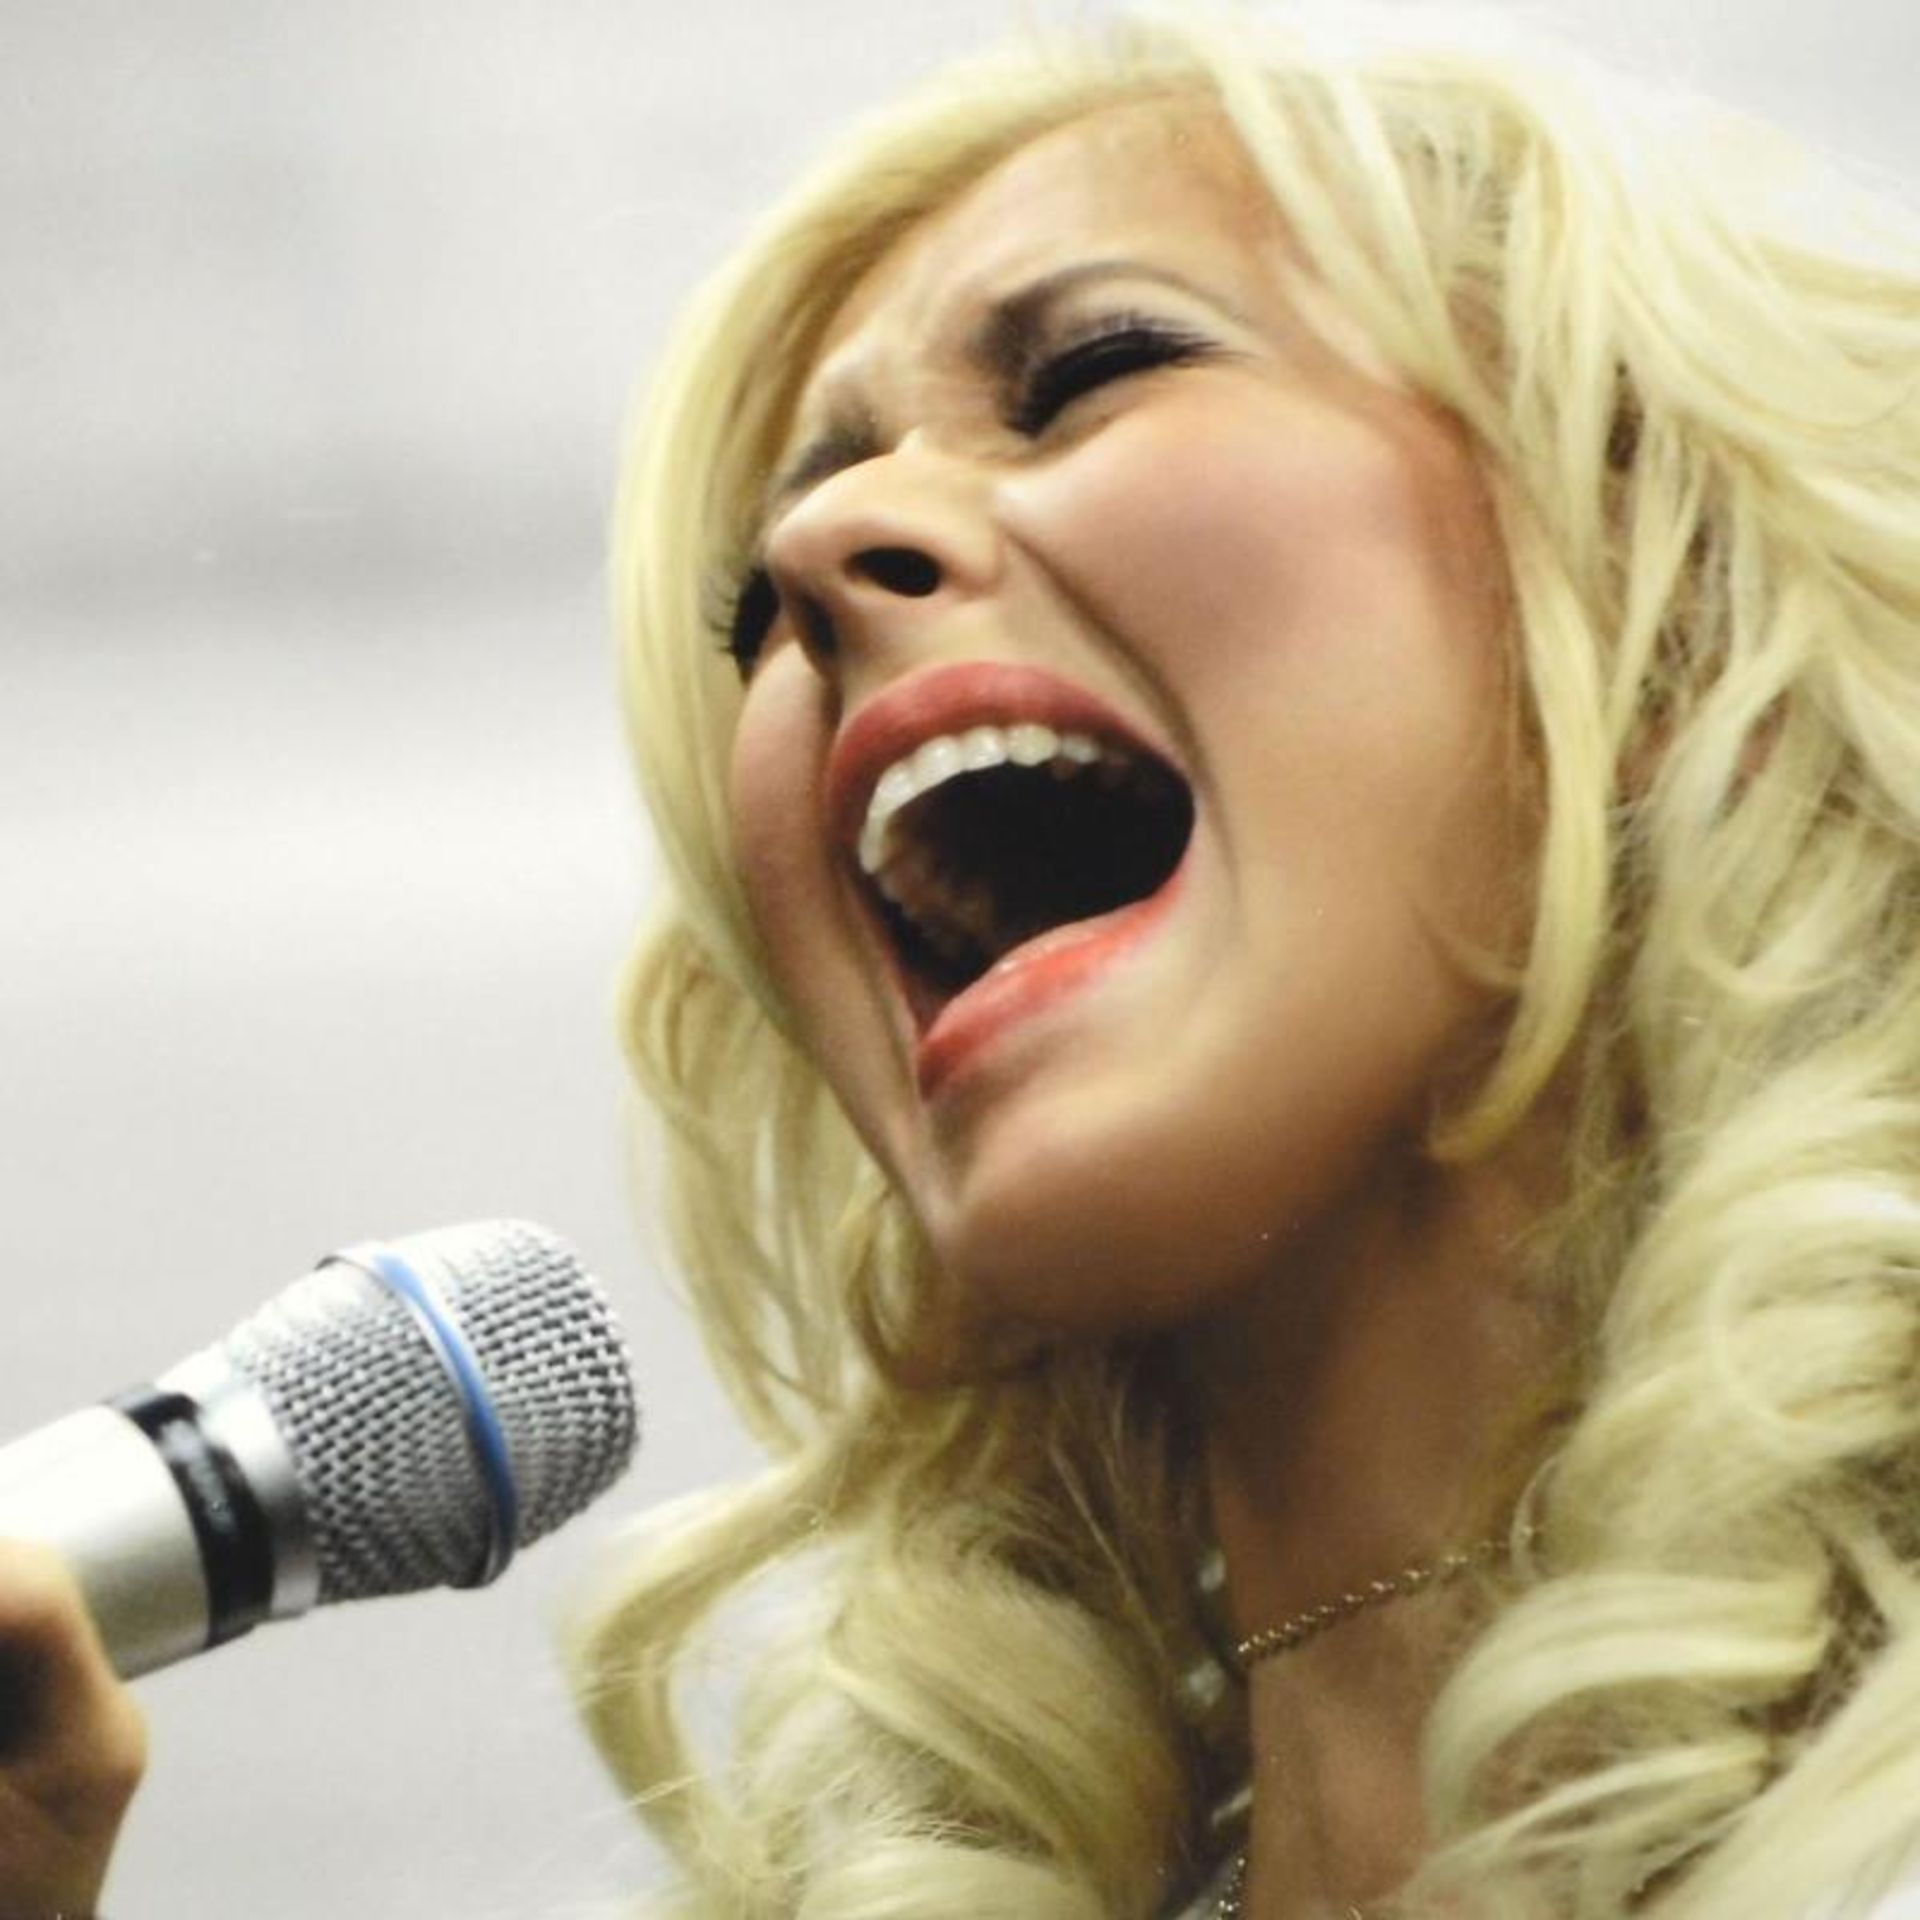 Christina Aguilera by Shanahan, Rob - Image 2 of 2